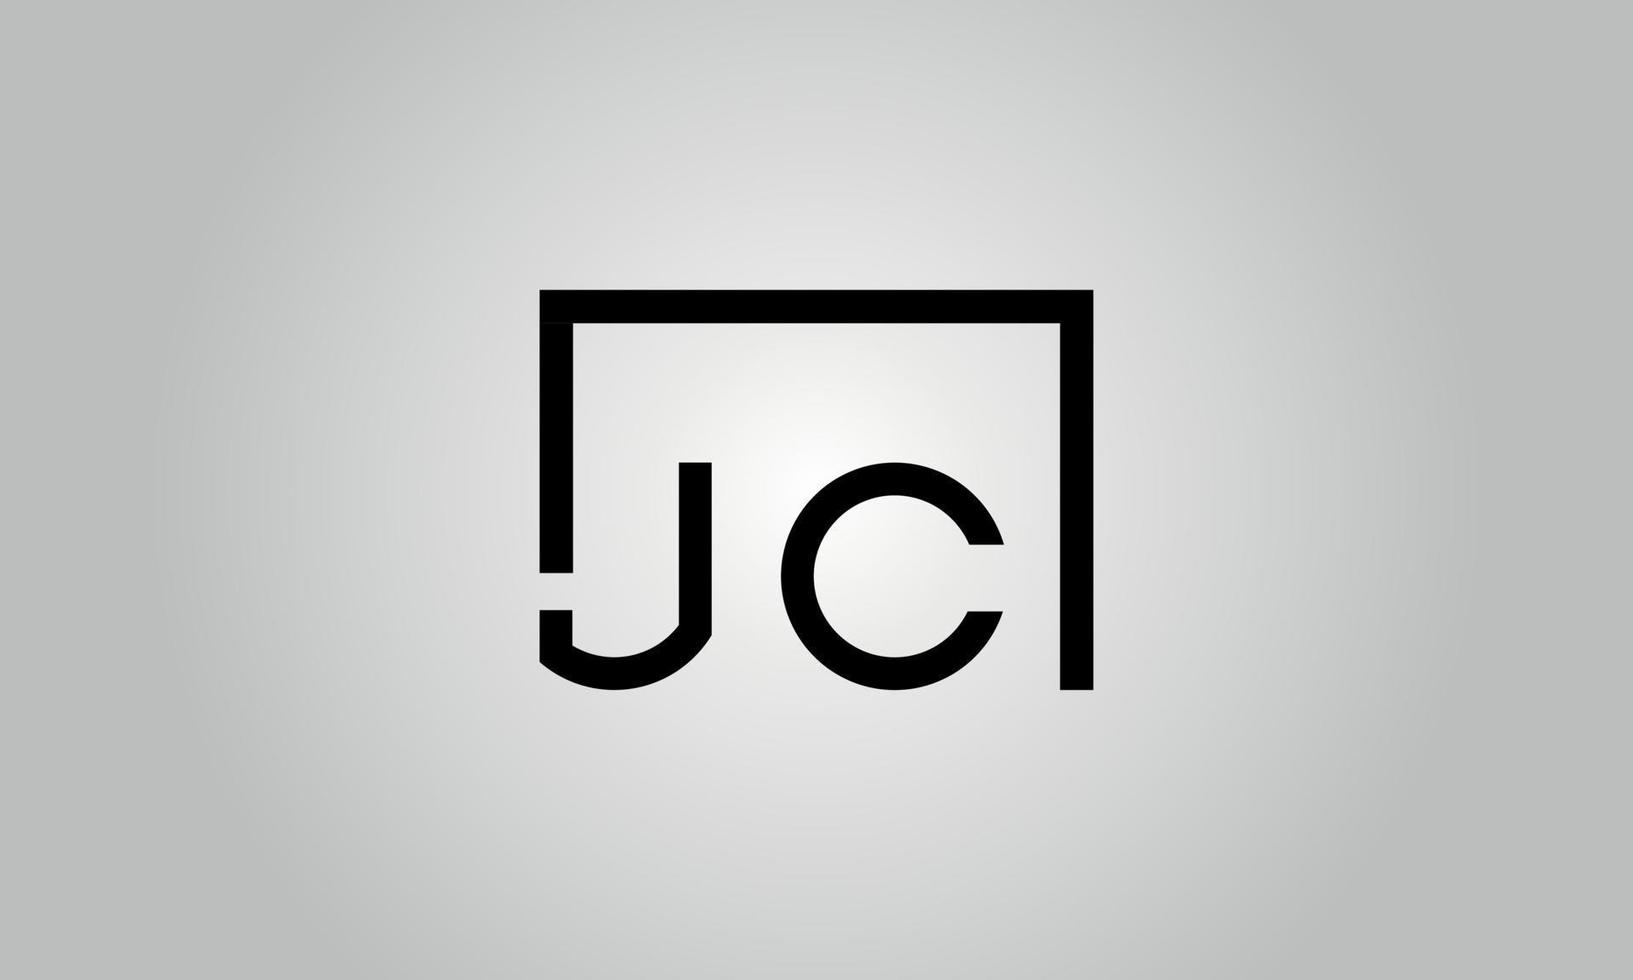 création de logo lettre jc. logo jc avec forme carrée dans le modèle de vecteur gratuit de vecteur de couleurs noires.